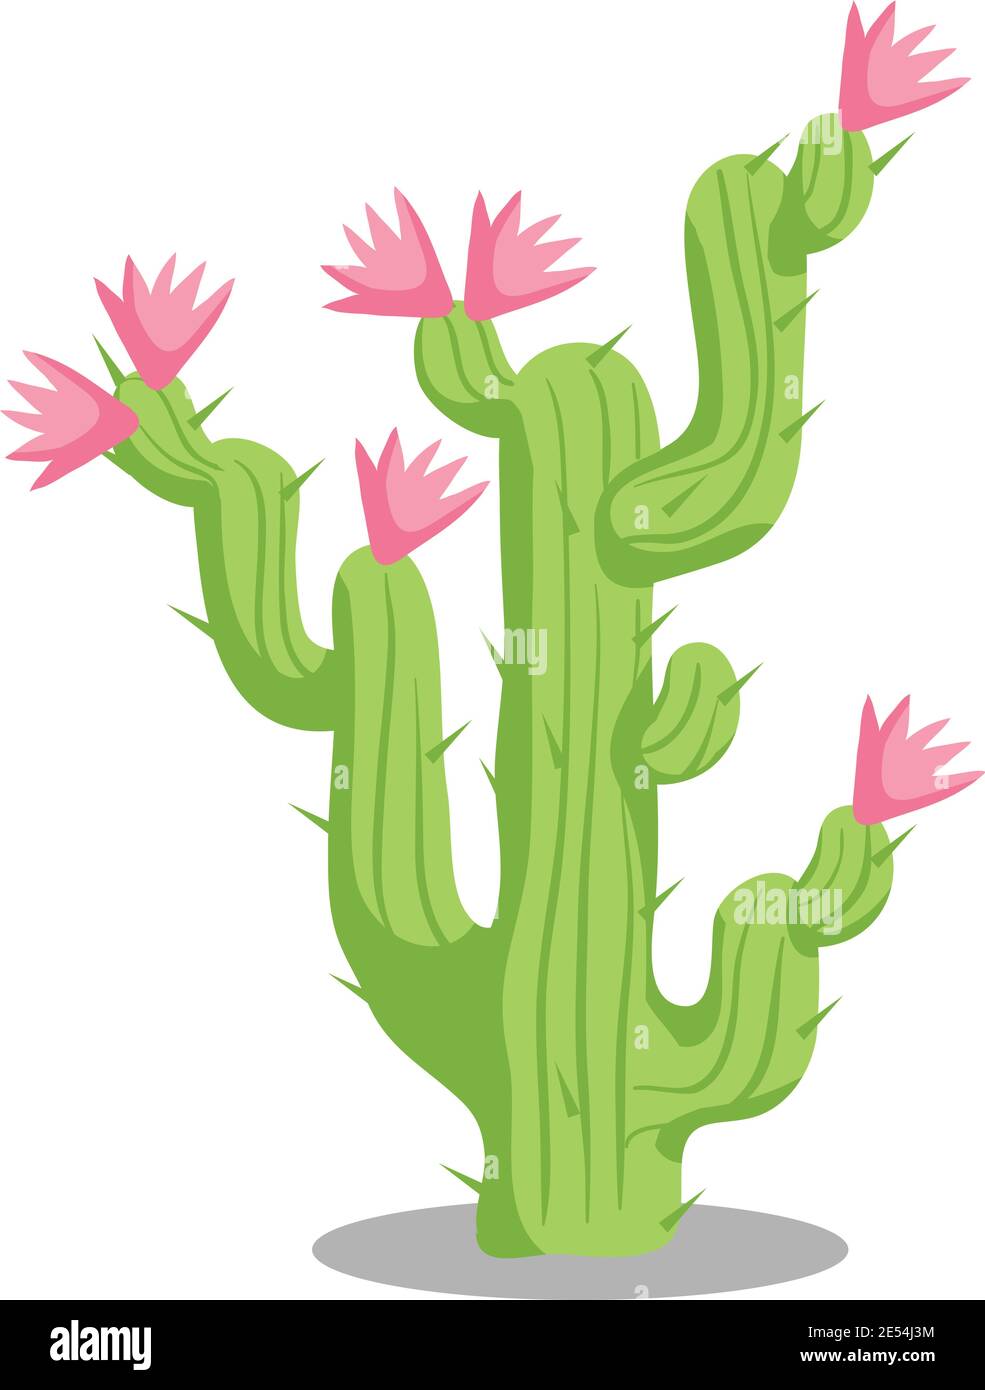 Illustrazione dello stock di piante del deserto di Cactus, isolato su sfondo bianco Illustrazione Vettoriale